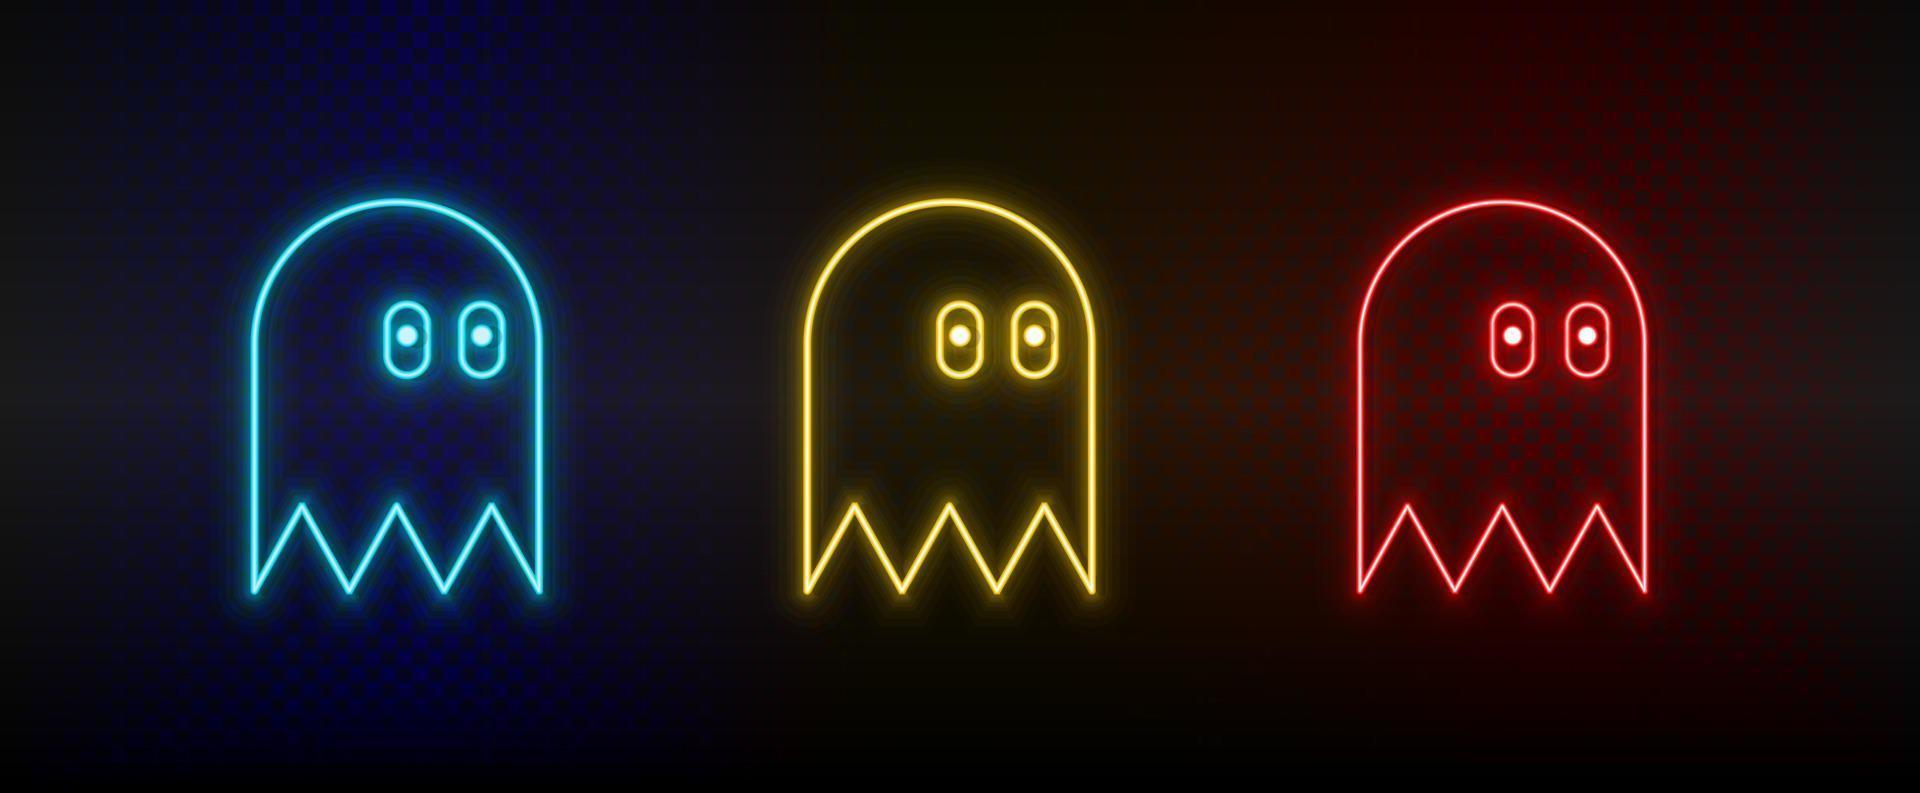 iconos de neón. arcade retro del personaje del juego. conjunto de icono de vector de neón rojo, azul, amarillo sobre fondo oscuro